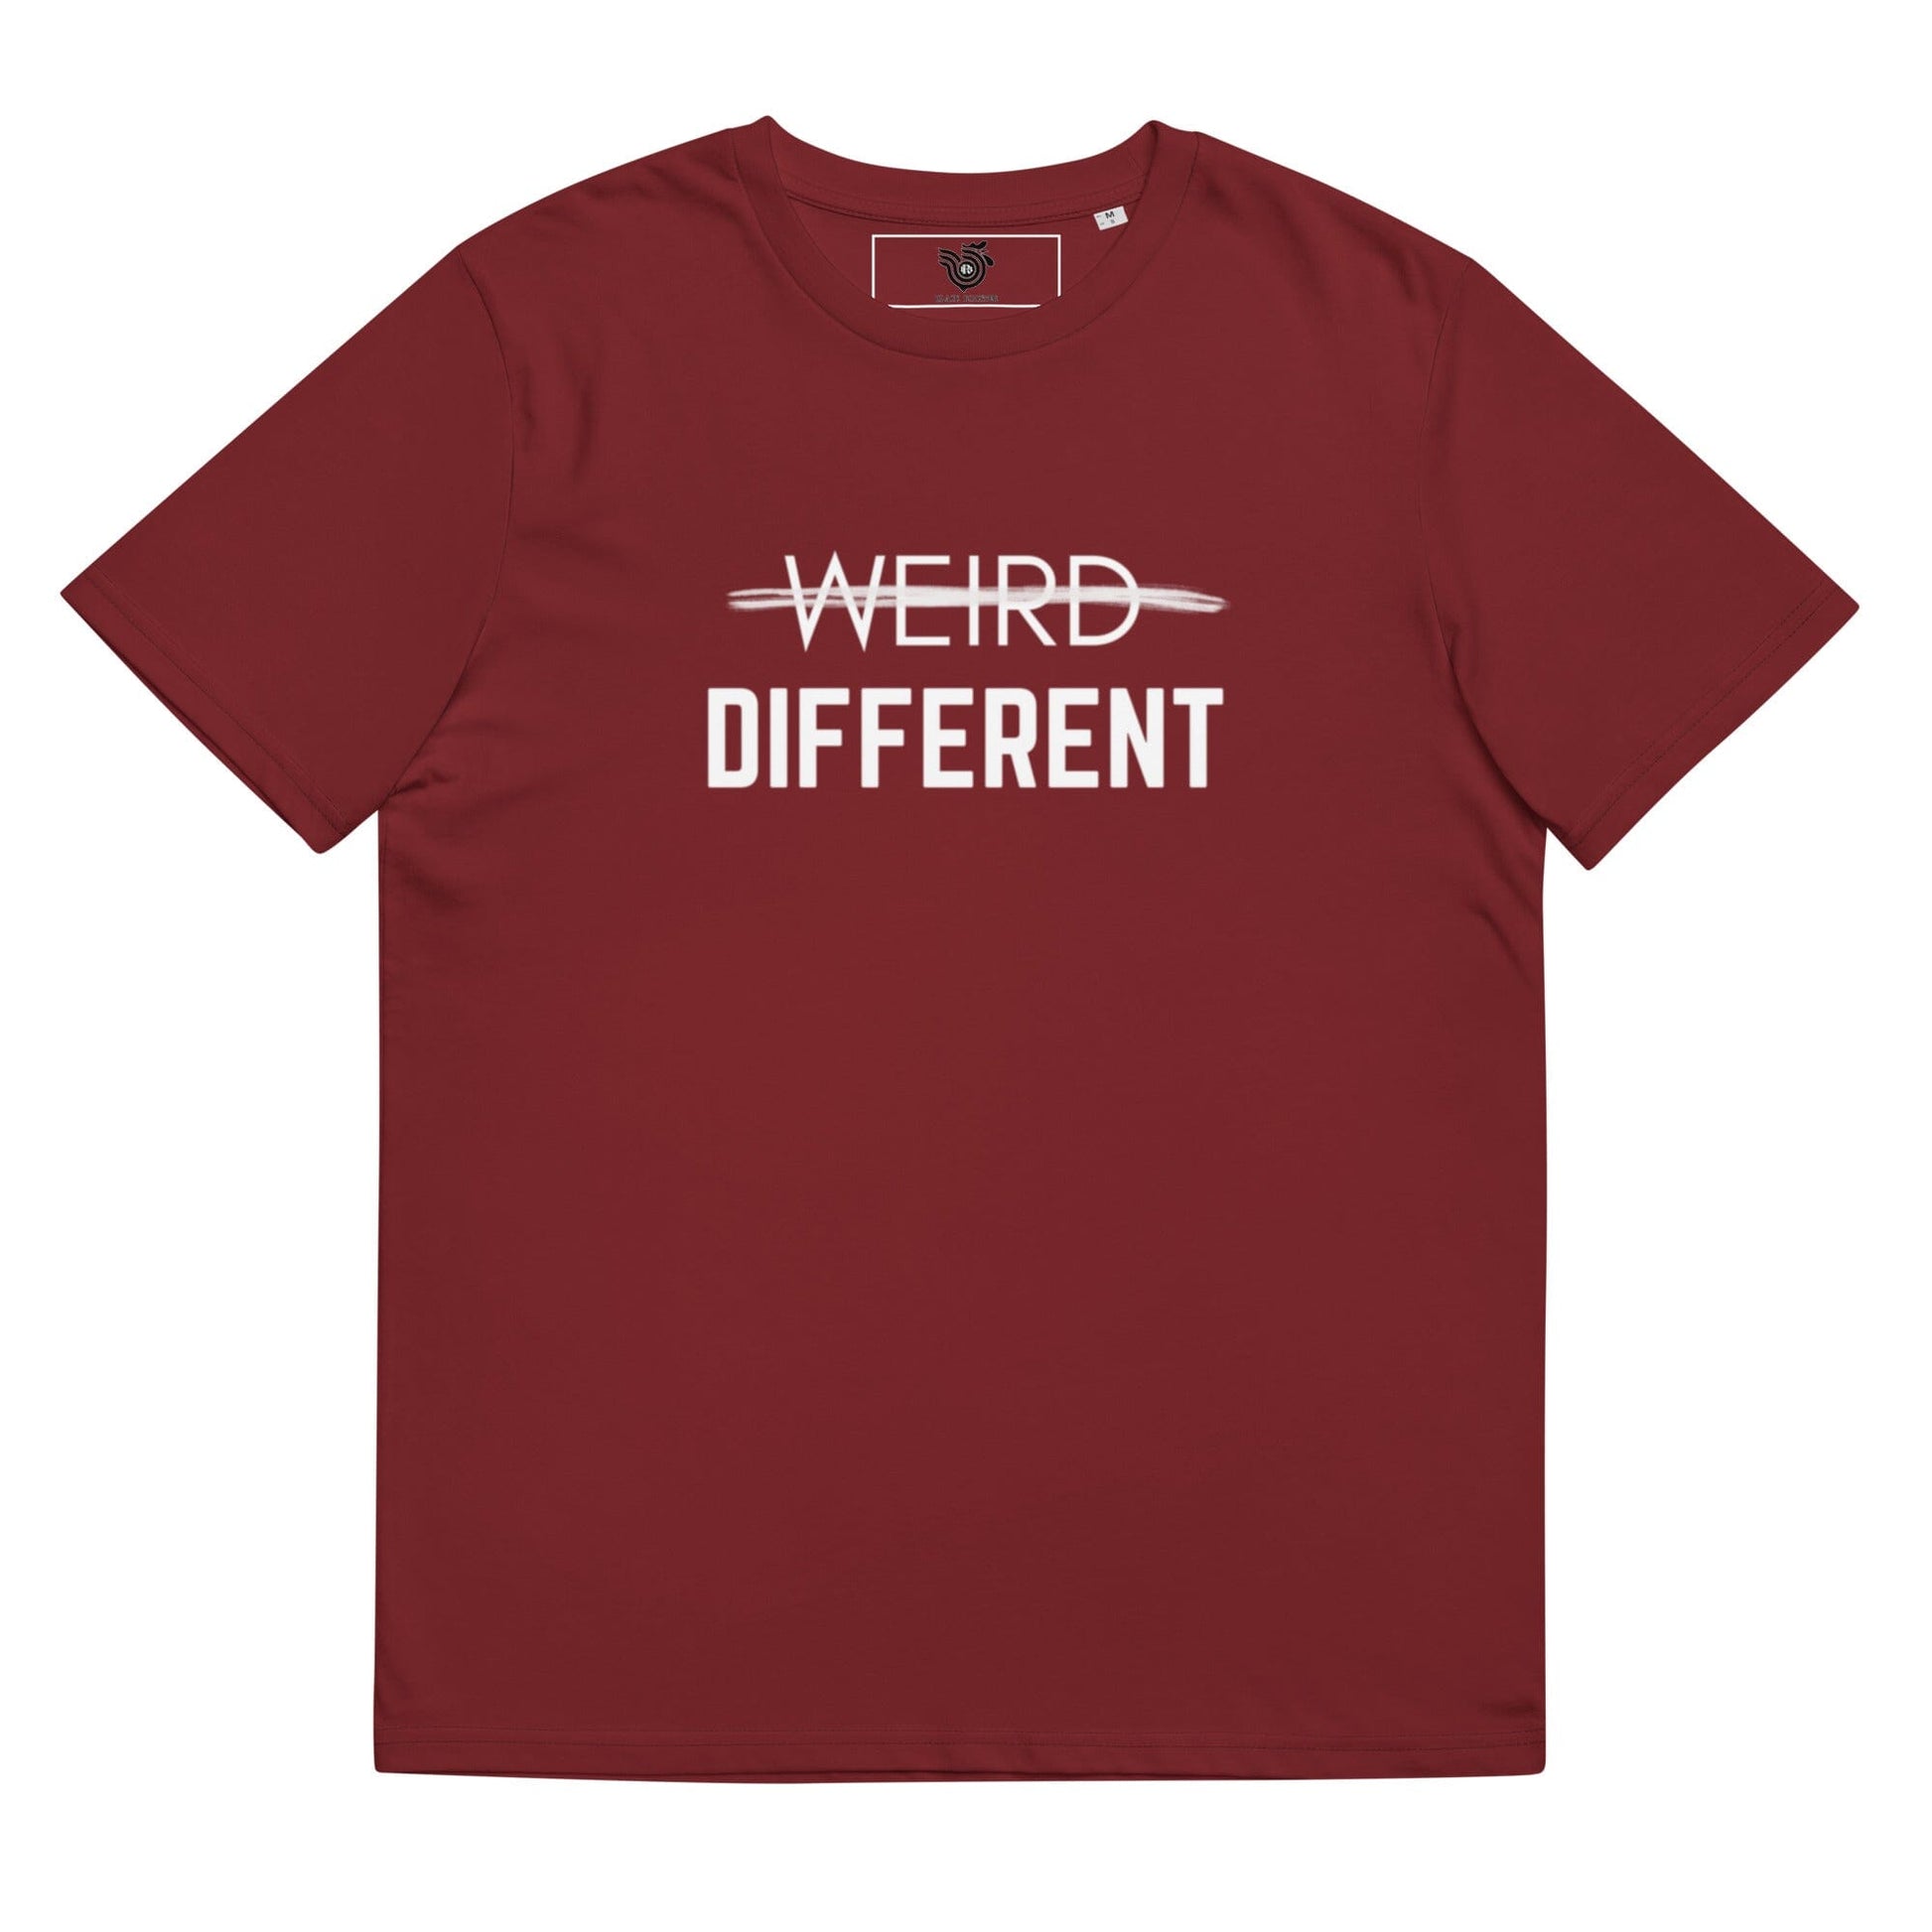 Not Weird, Different unisex organic cotton t-shirt